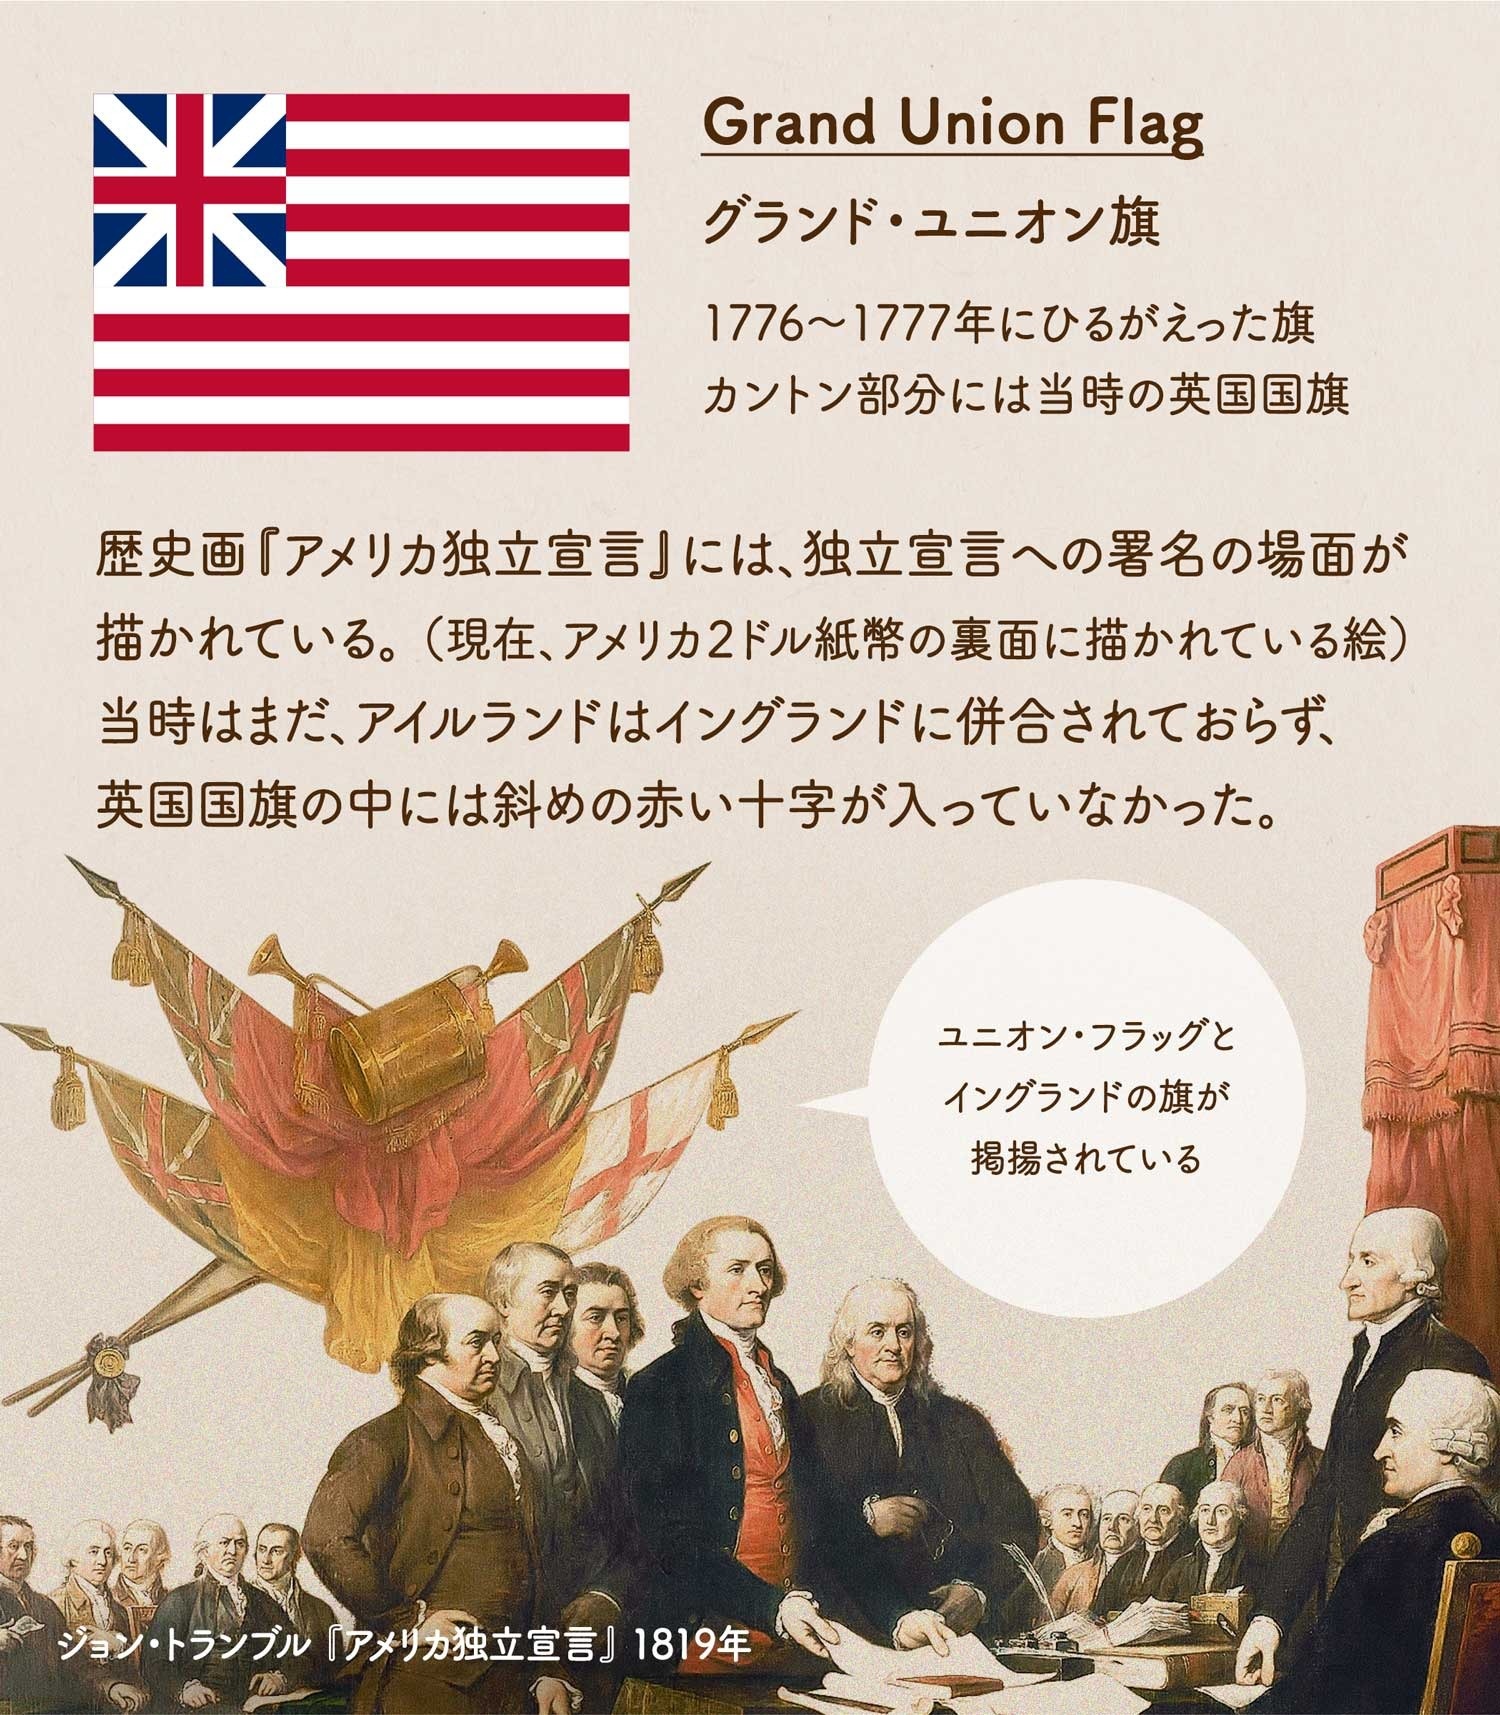 アメリカの国旗 星条旗の歴史 国旗のデザインを学ぼう 世界の国旗 デザインから世界を学ぼう